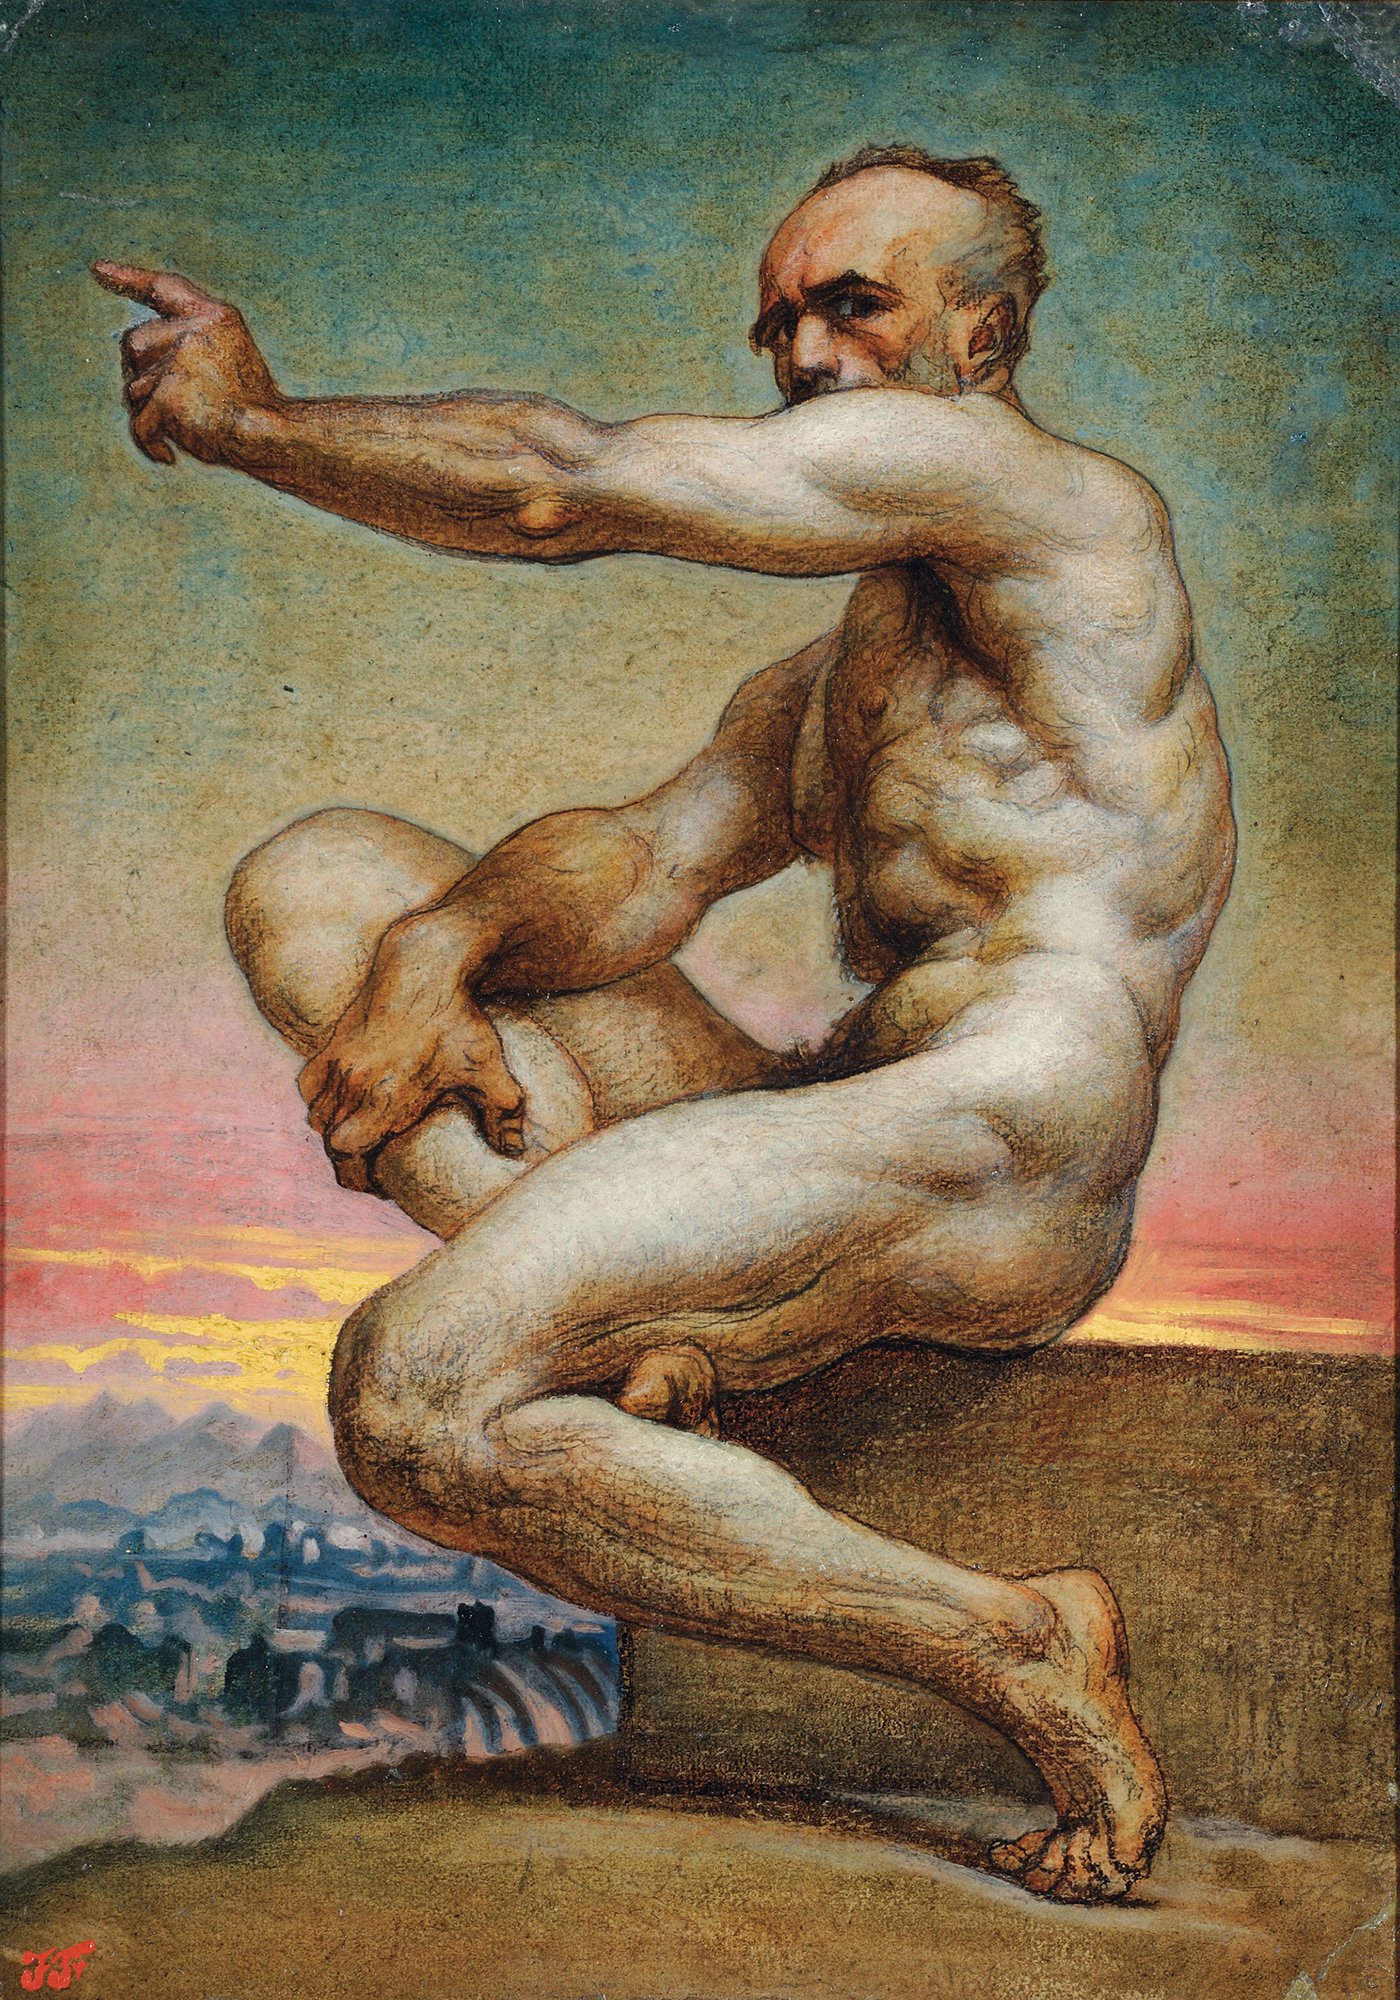 Abbildung des Werks "Selbstbildnis als Akt" von Jean-Baptiste Frenet aus den Jahren 1850/60, das in der Ausstellung "Ich bin hier" vom 31. Oktober 2015 bis 31. Januar 2016 in der Staatlichen Kunsthalle Karlsruhe zu sehen war.